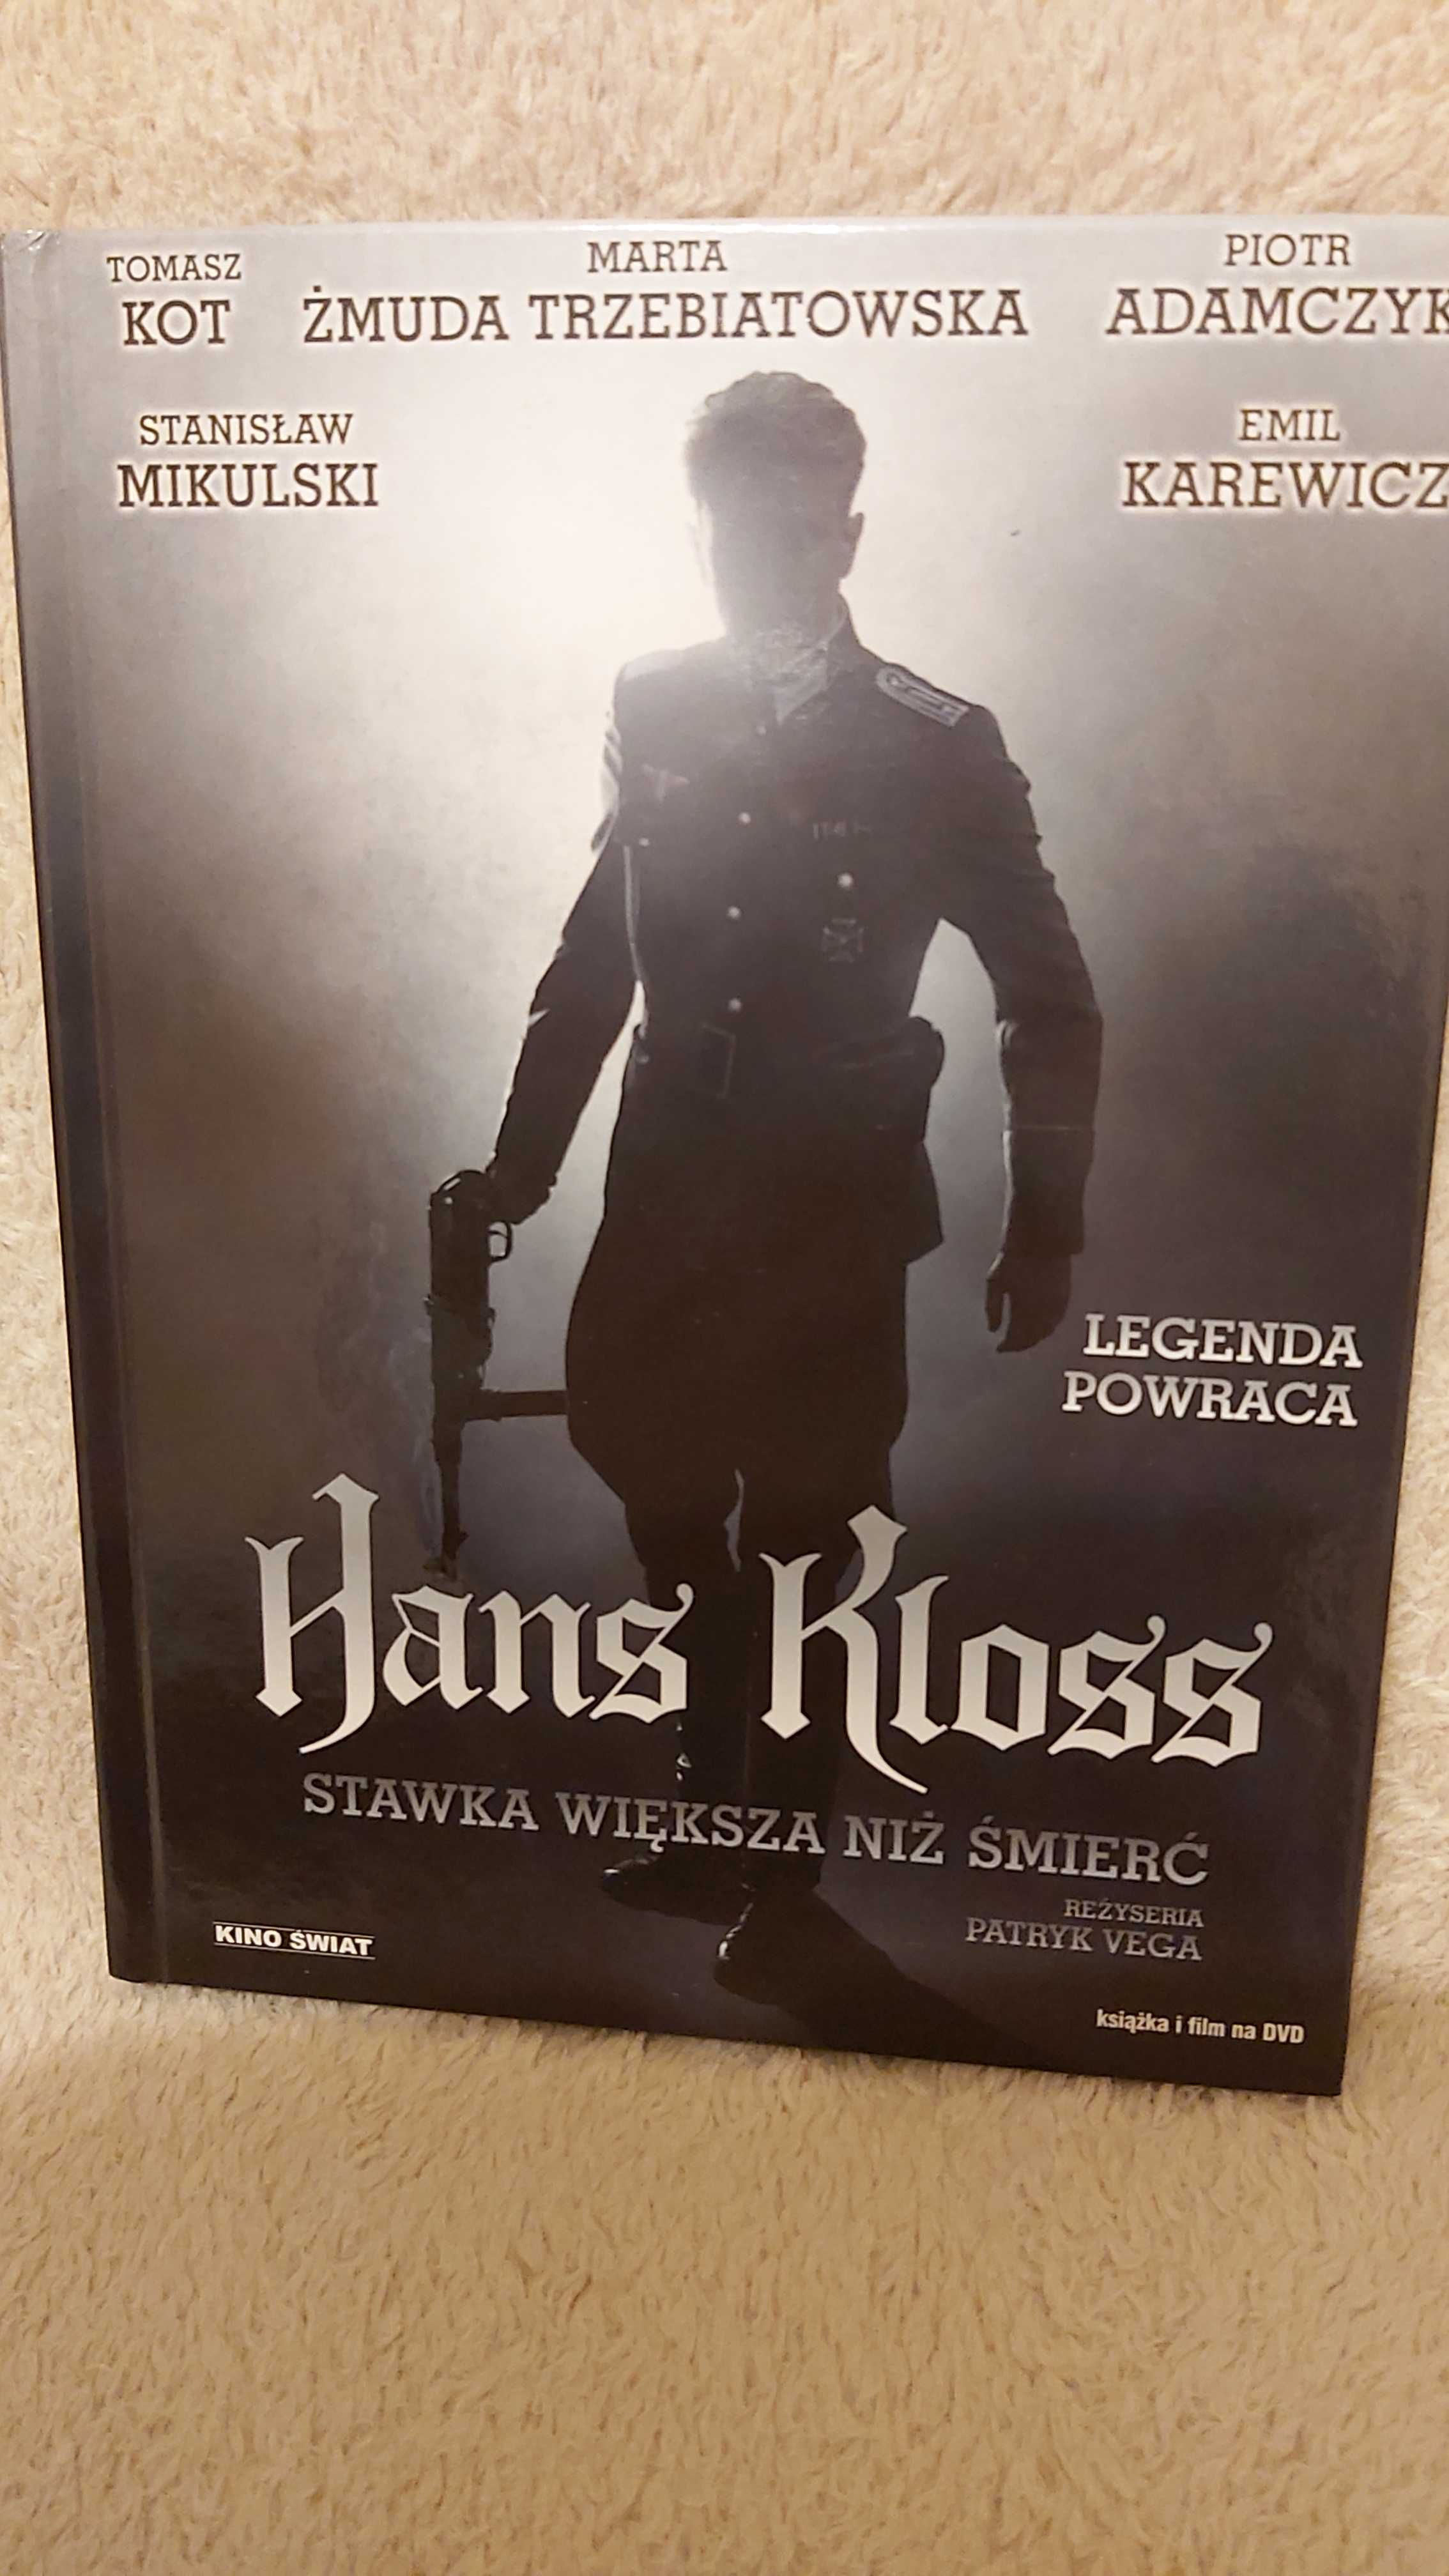 Film DVD "Hans Kloss Stawka większa niż śmierć" wydanie z książeczkąm